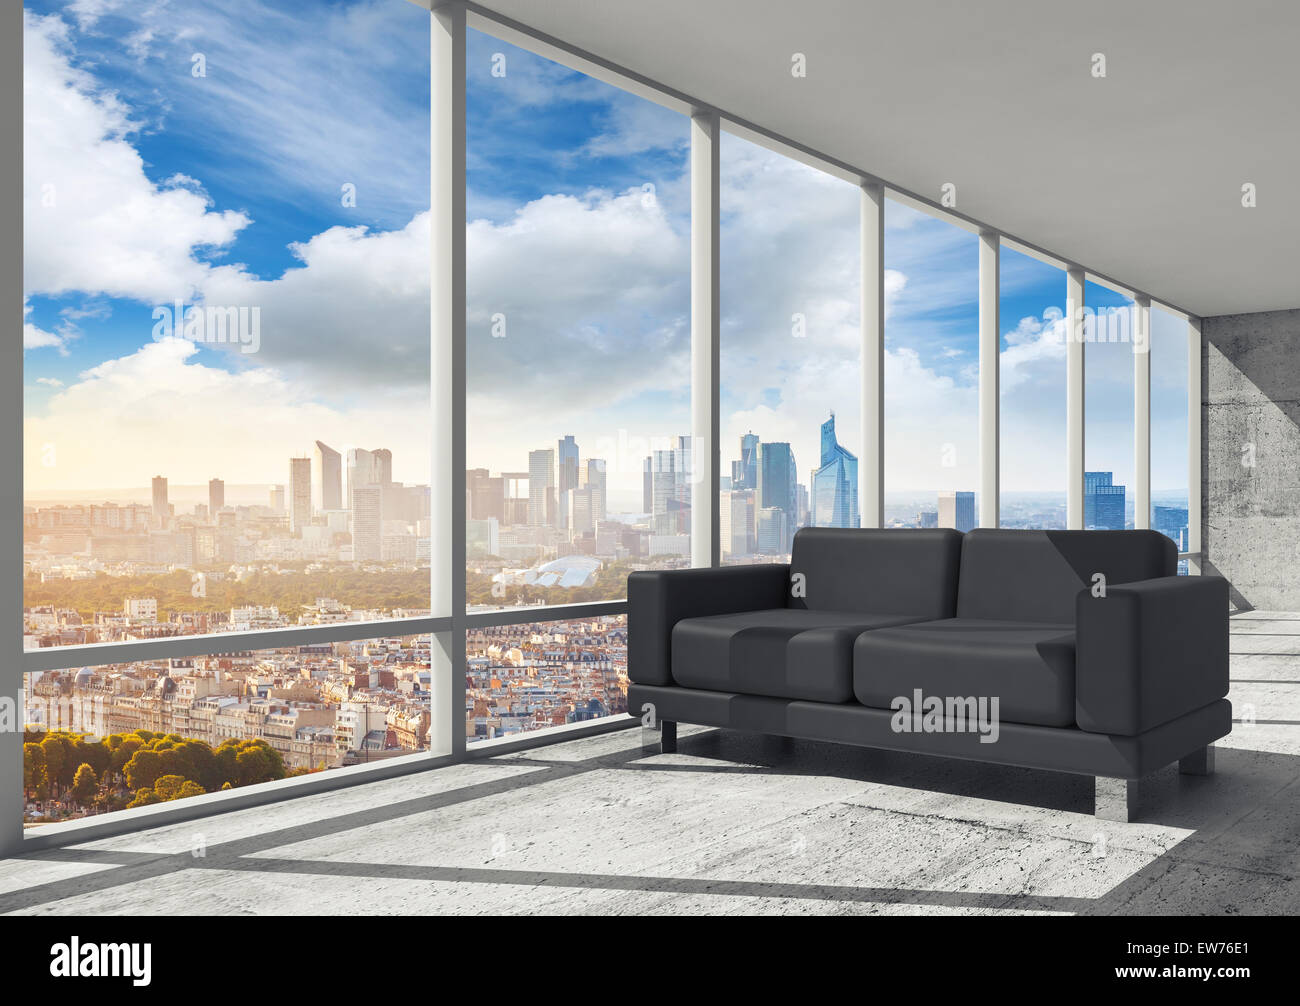 Interieur, Arbeitszimmer mit Betonboden, Fenster und schwarzen Ledersofa, 3D-Illustration mit großen Stadtbild Skyline auf abstrakte Stockfoto